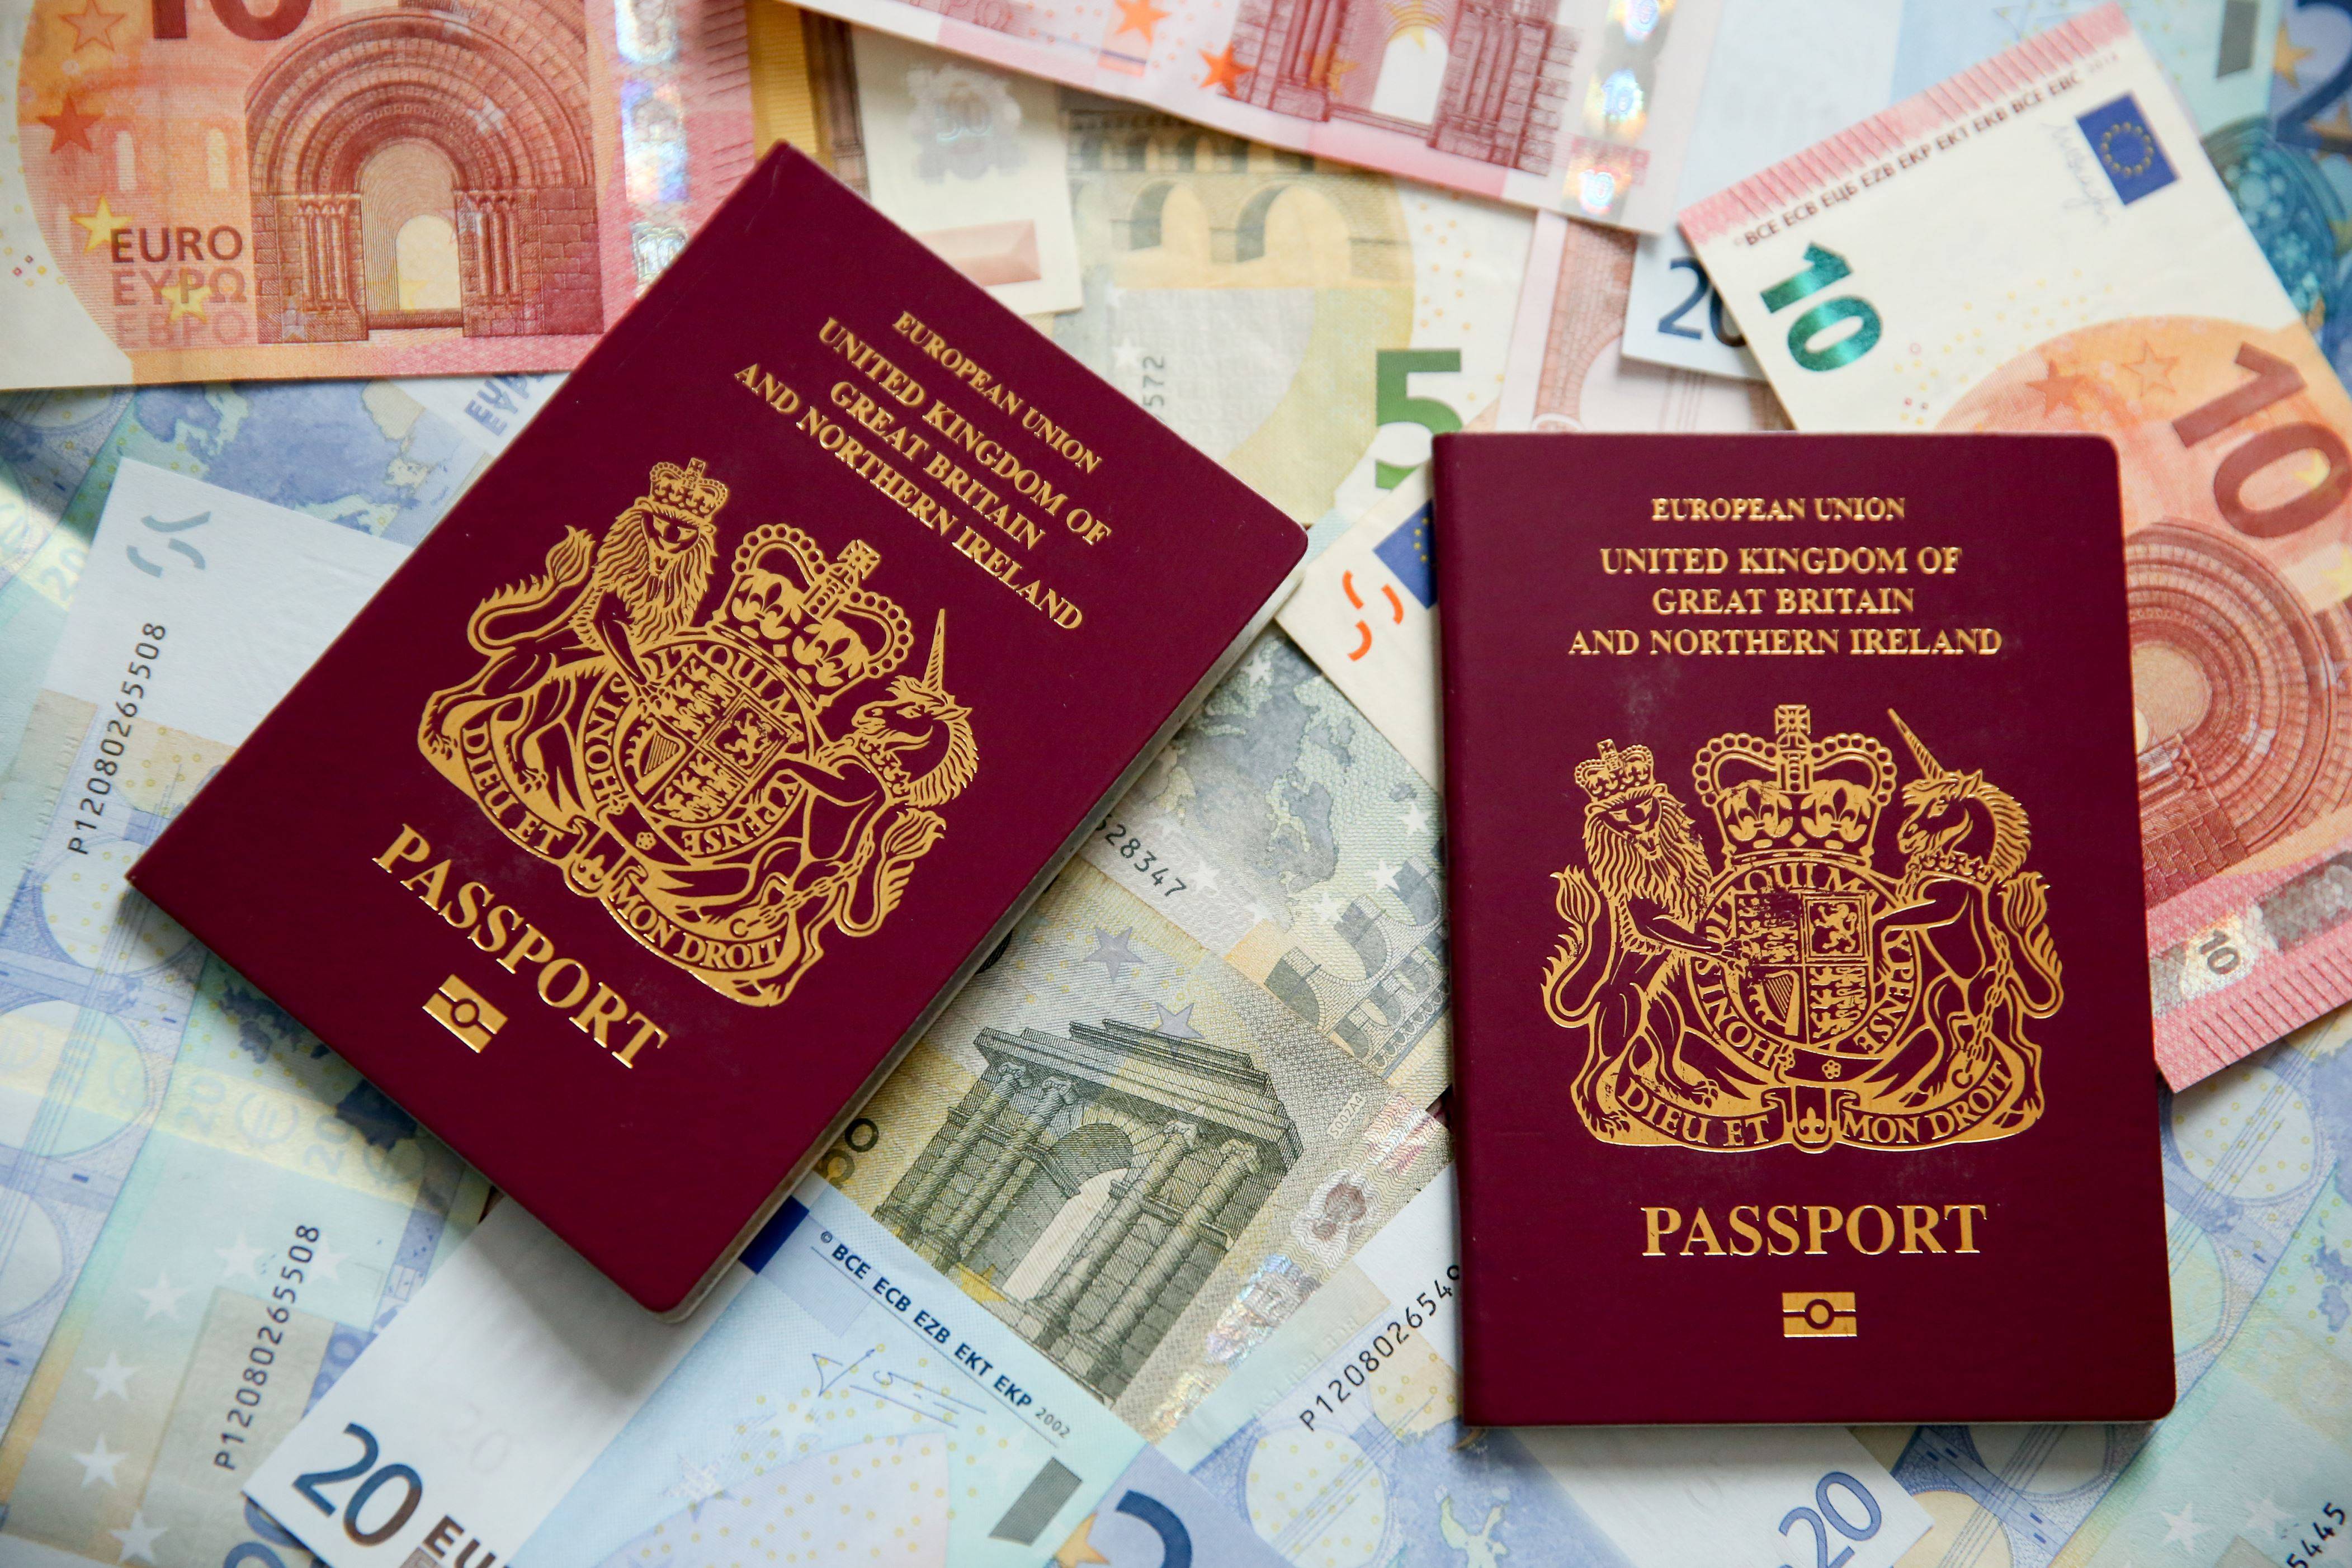 Как получить гражданство испании гражданину россии в 2021 году?